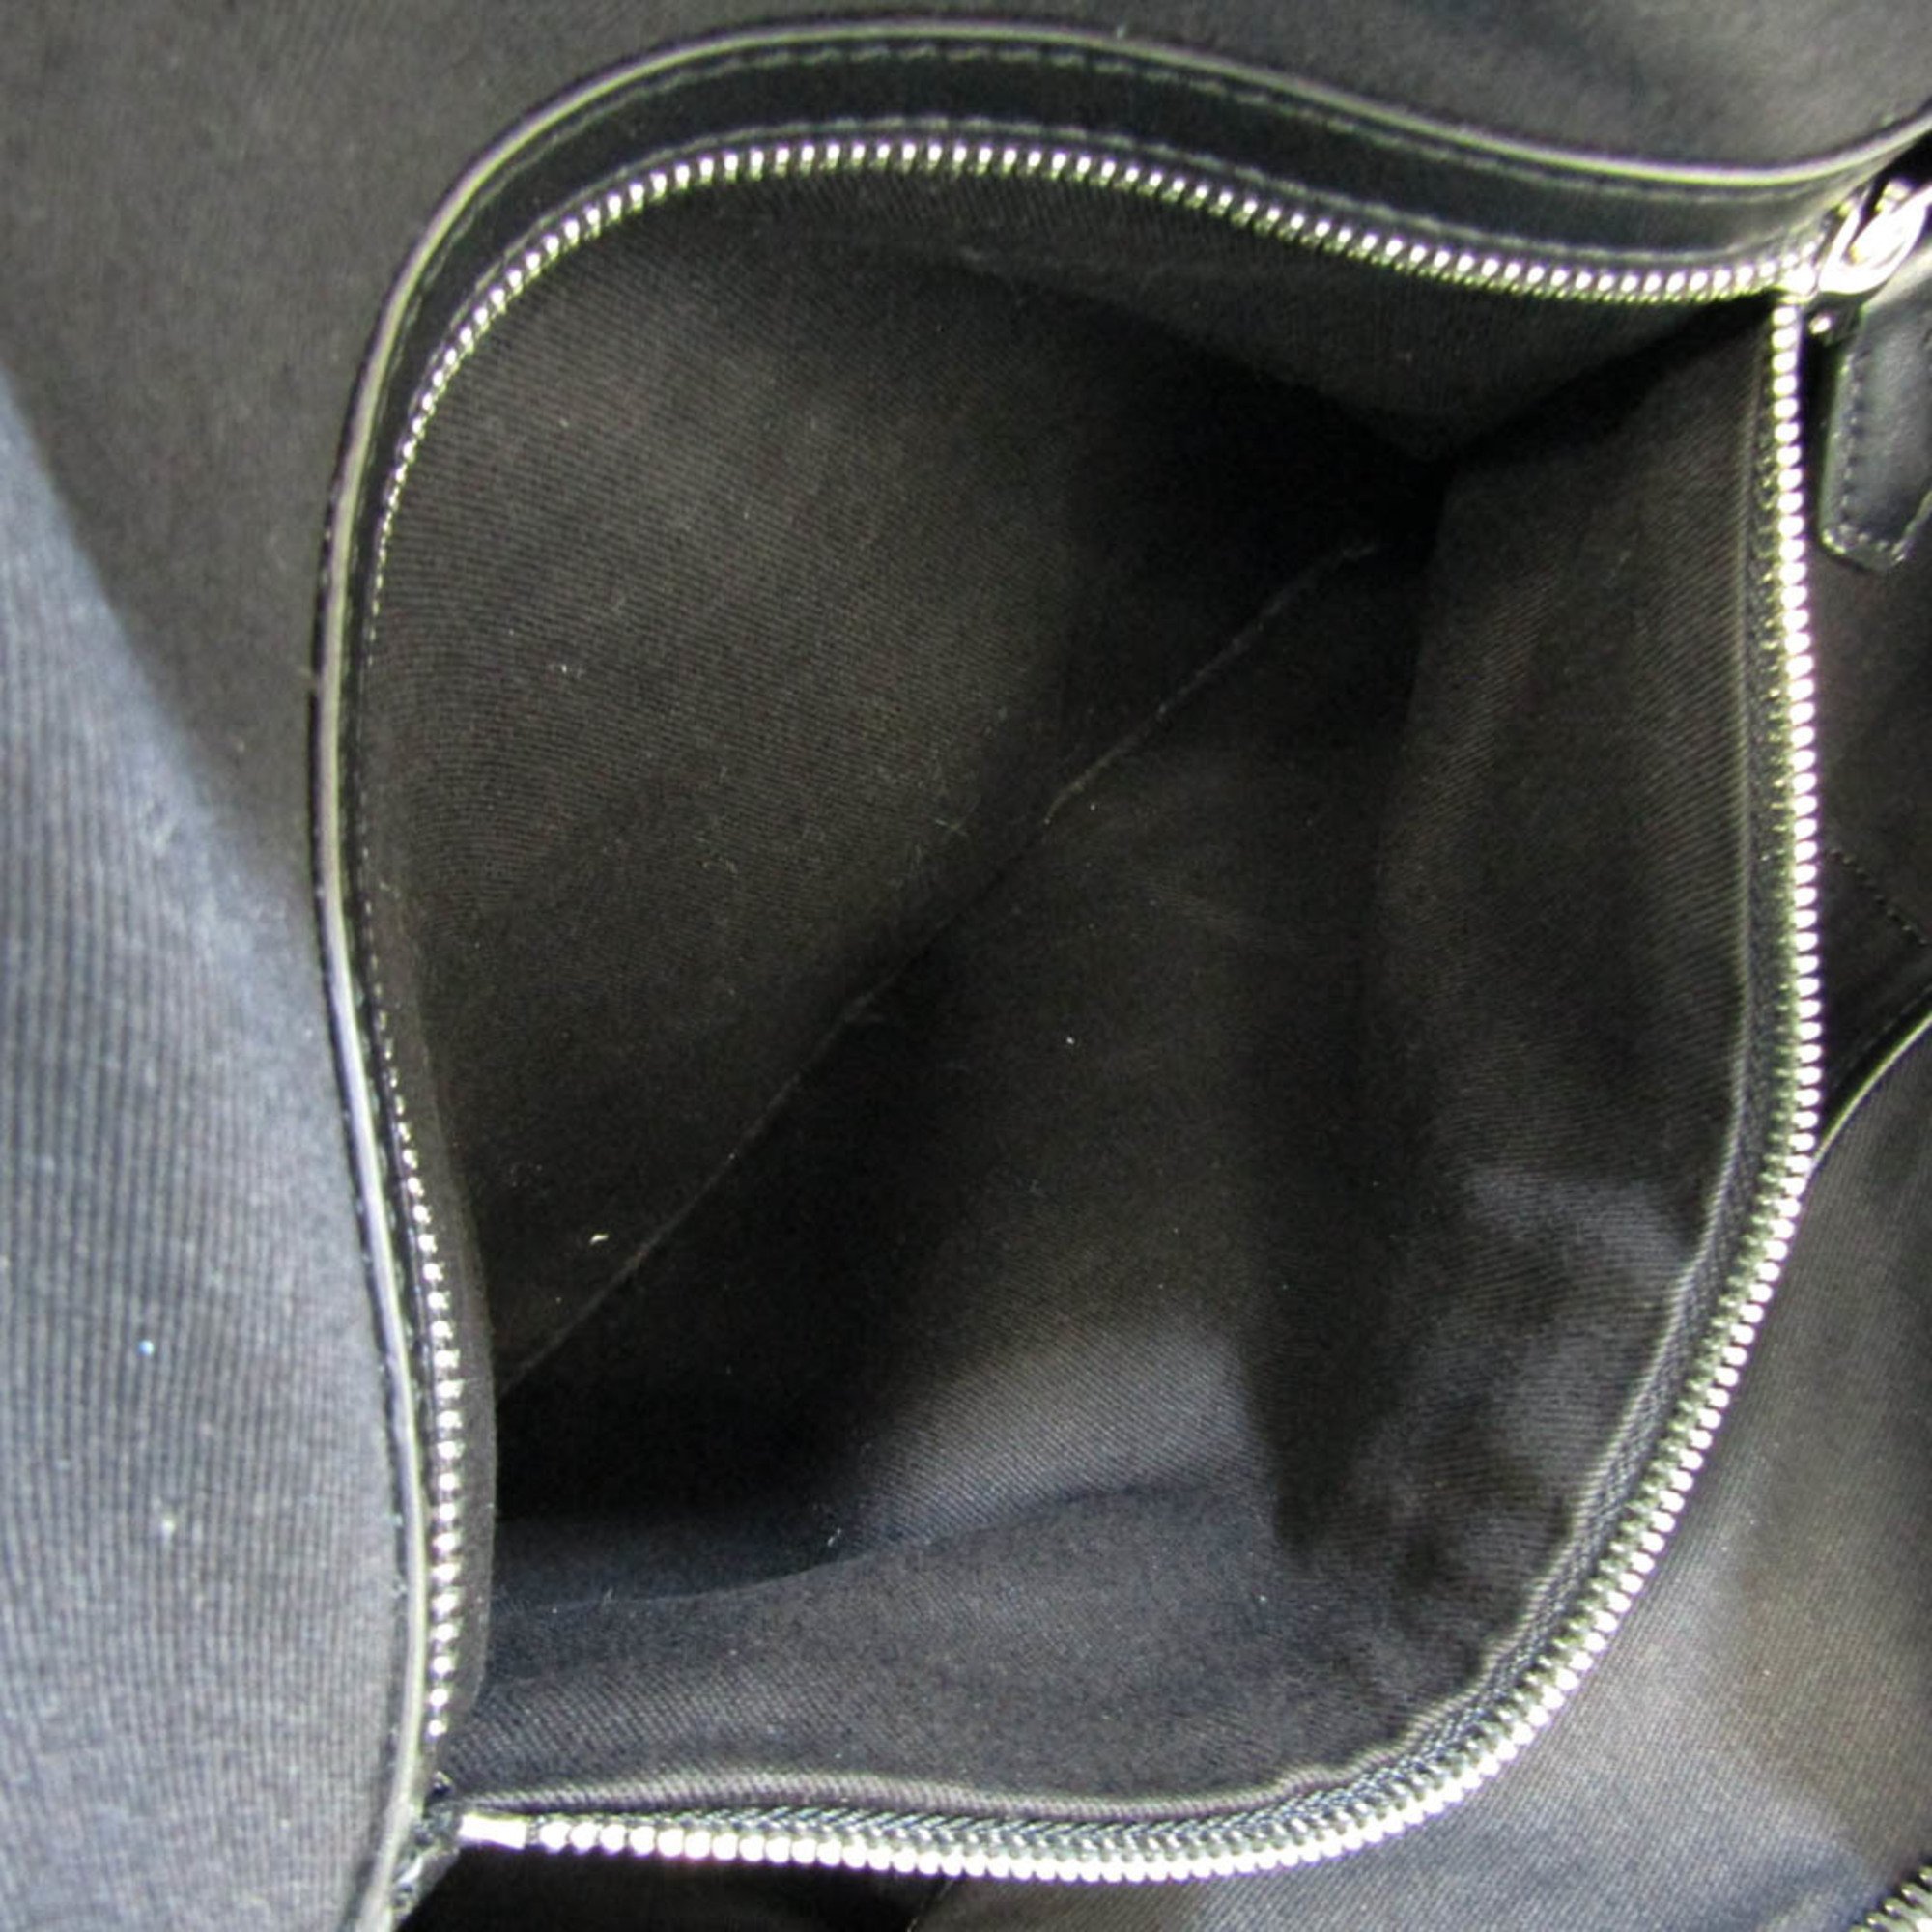 Givenchy Nightingale Women,Men Leather,Canvas Handbag,Shoulder Bag Black